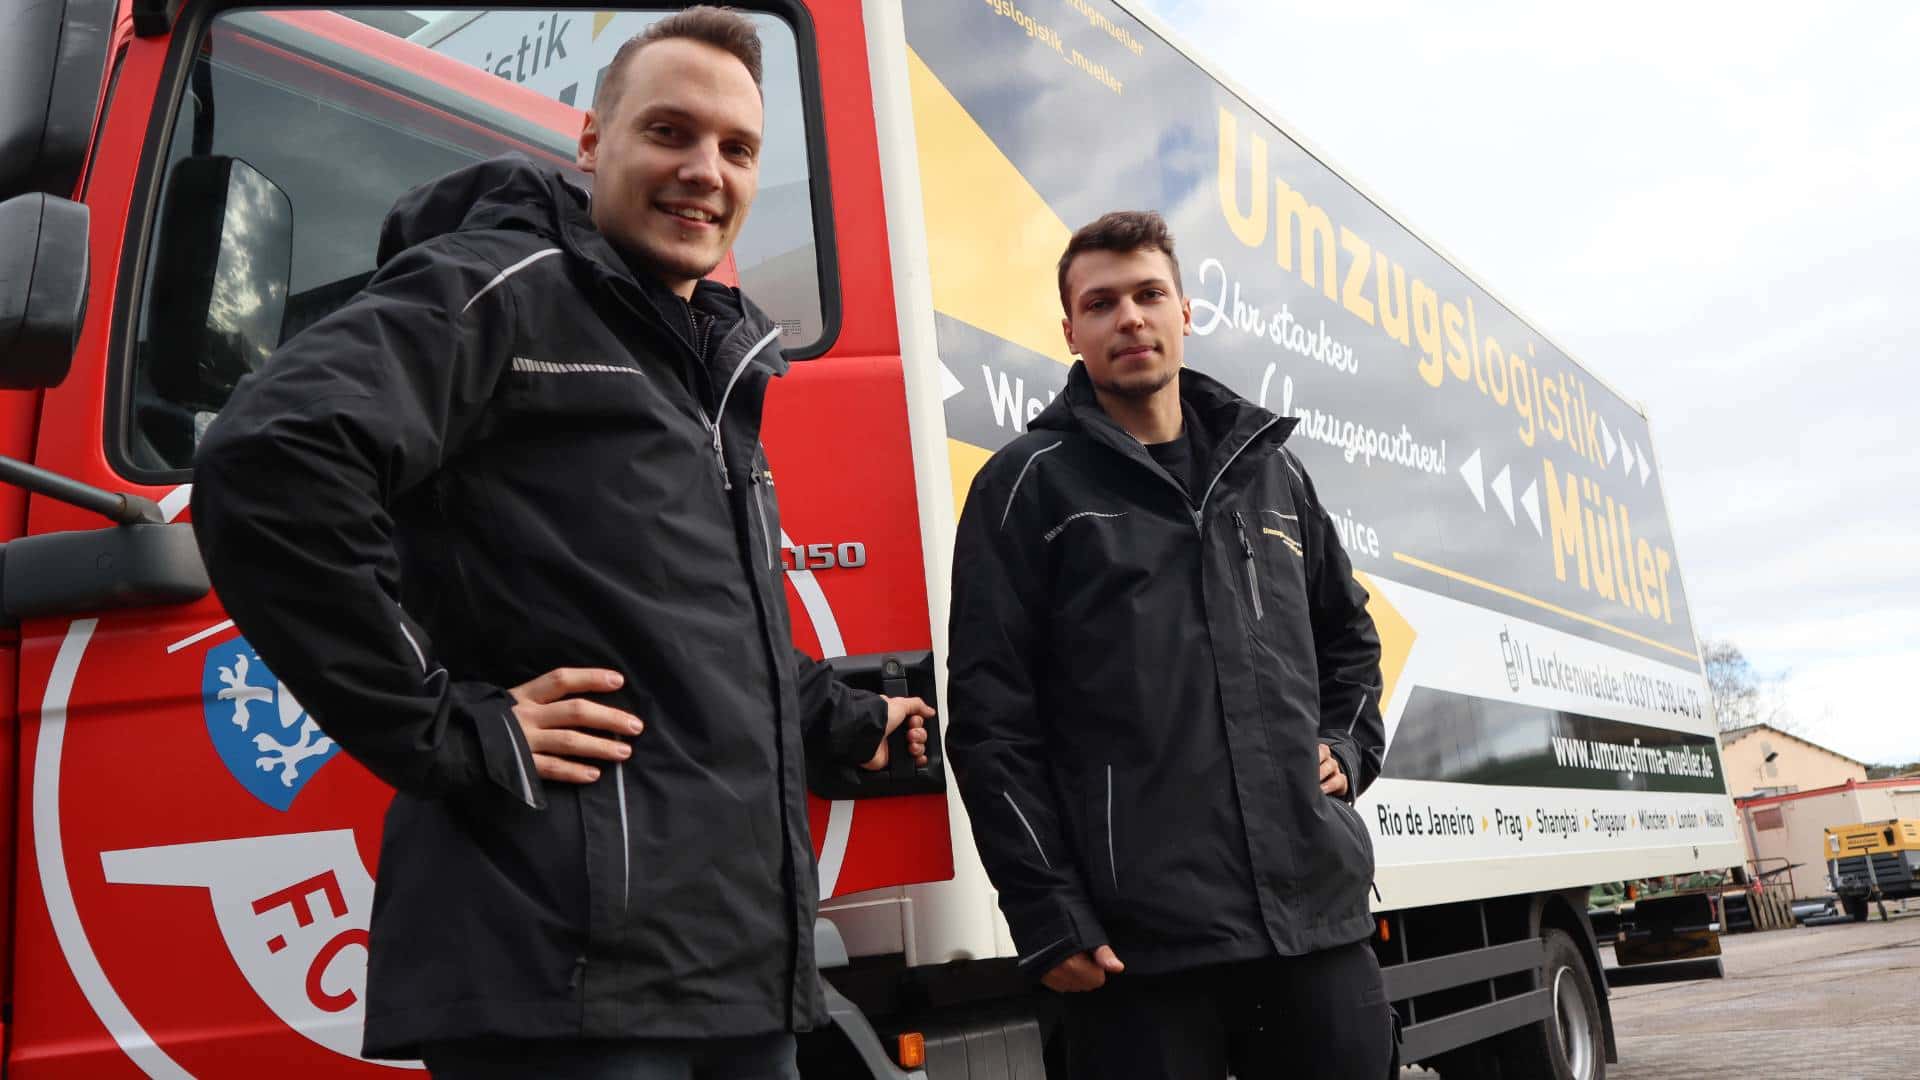 Günstiges Umzugsunternehmen Dortmund, wir bieten Top Leistungen zu fairen Preisen